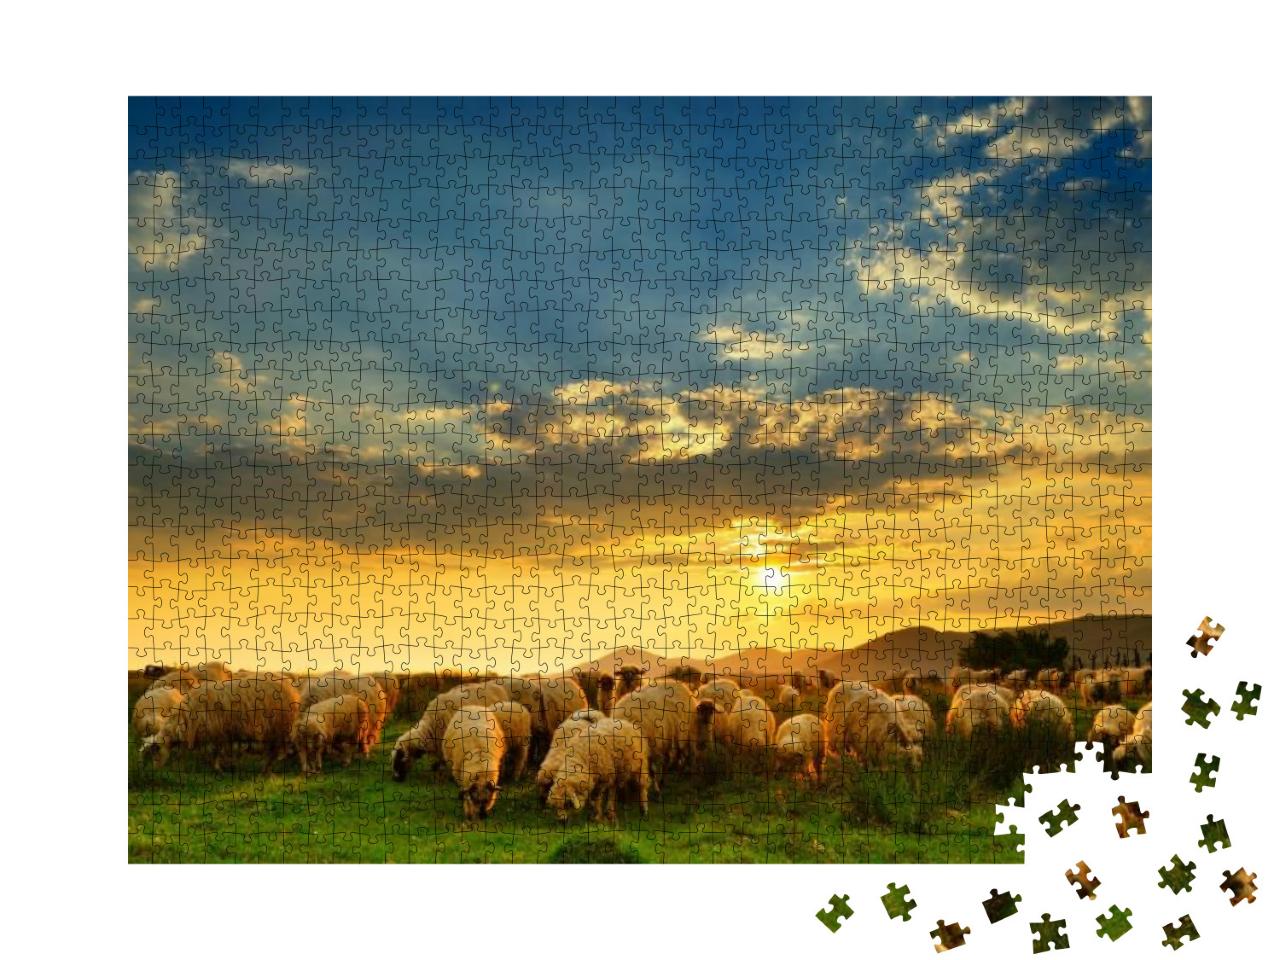 Puzzle 1000 Teile „Eine Schafherde weidet auf einem Hügel bei Sonnenuntergang“